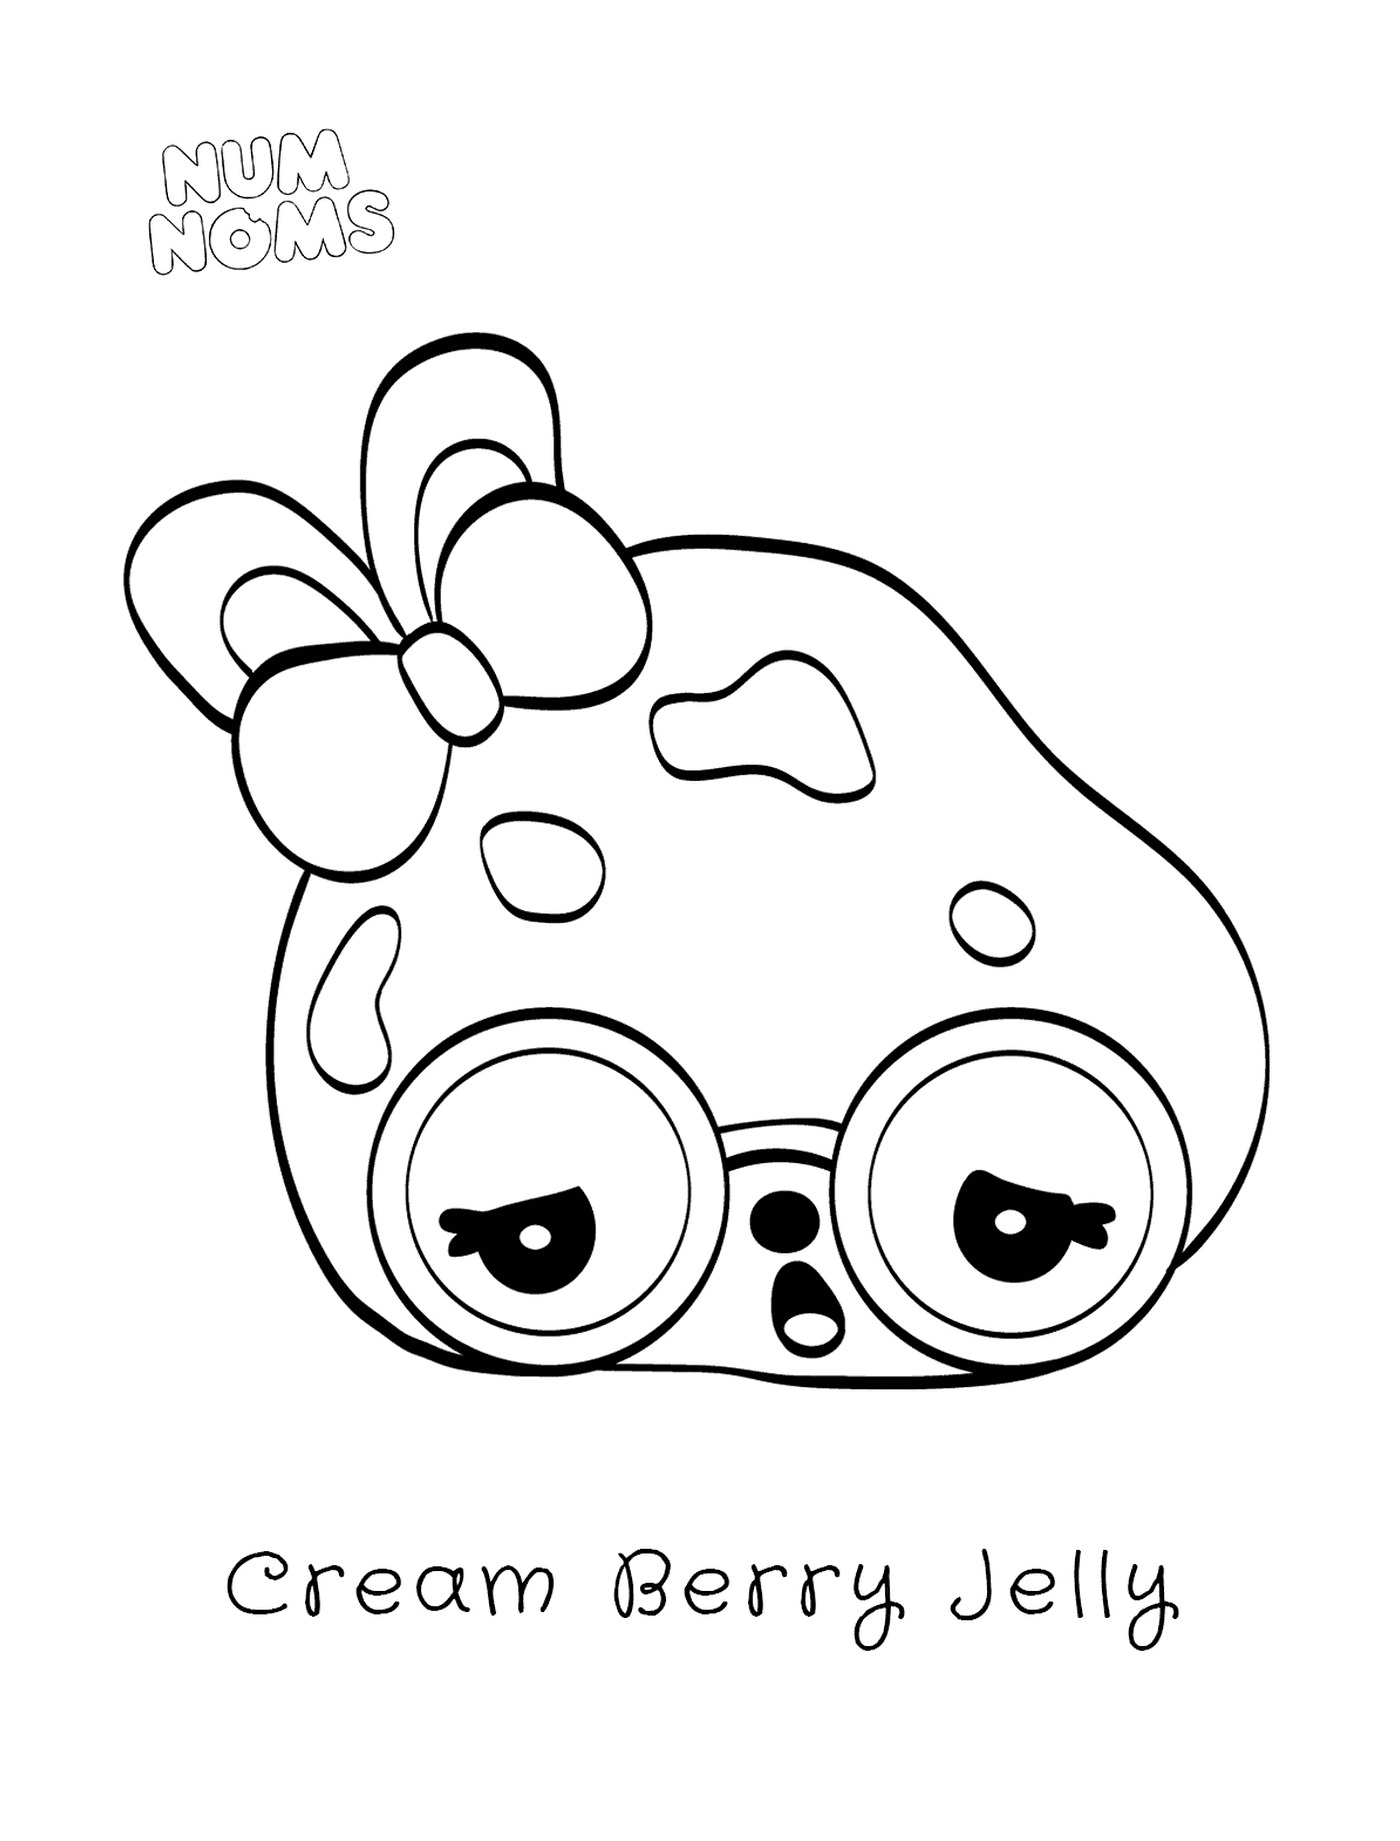  Jelly berry cream, uma surpresa 